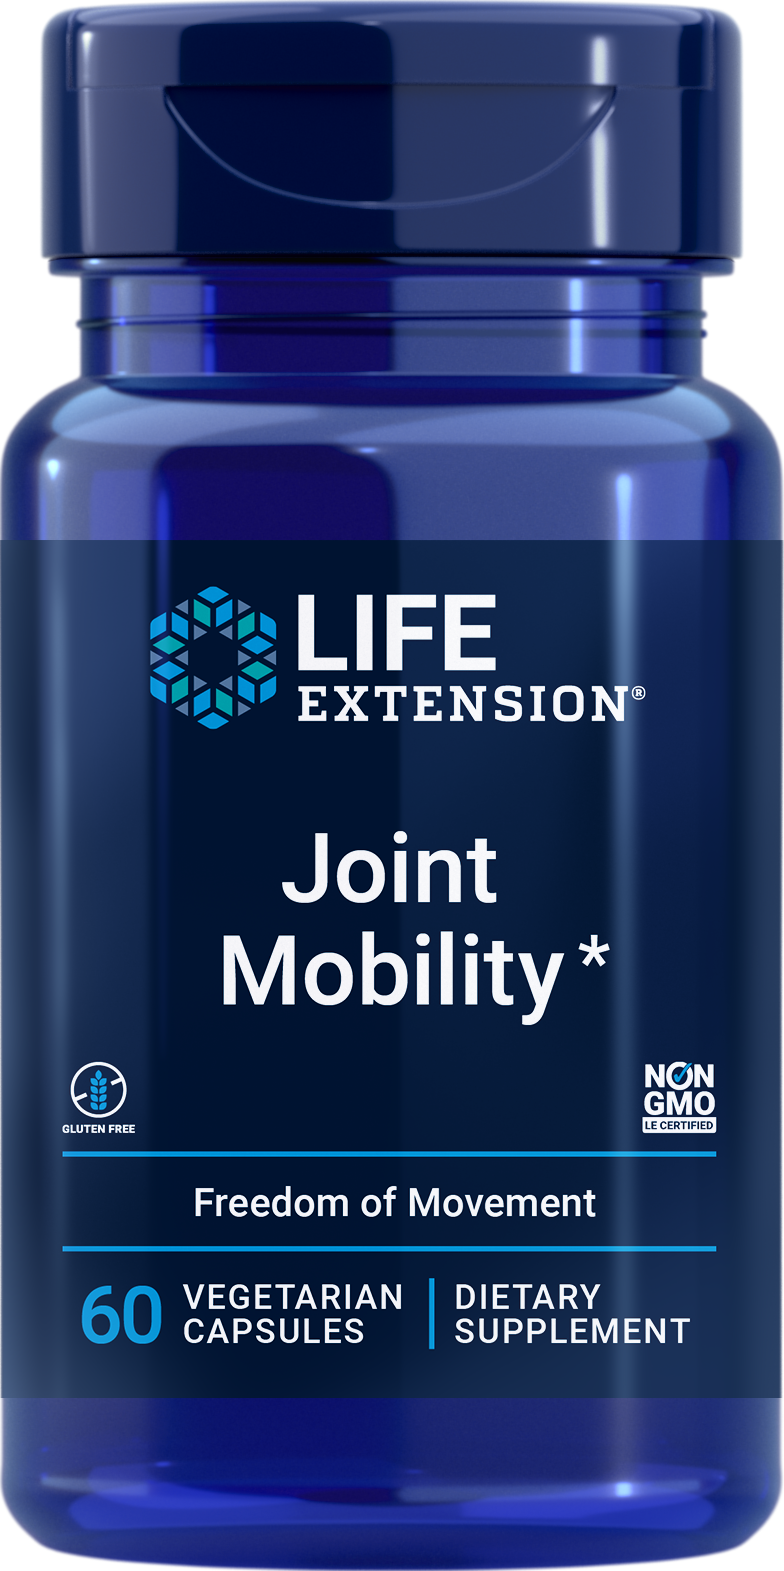 Life Extension Joint Mobility, 60 gélules végétales pour inhiber l'inflammation afin de favoriser la mobilité et le confort des articulations.